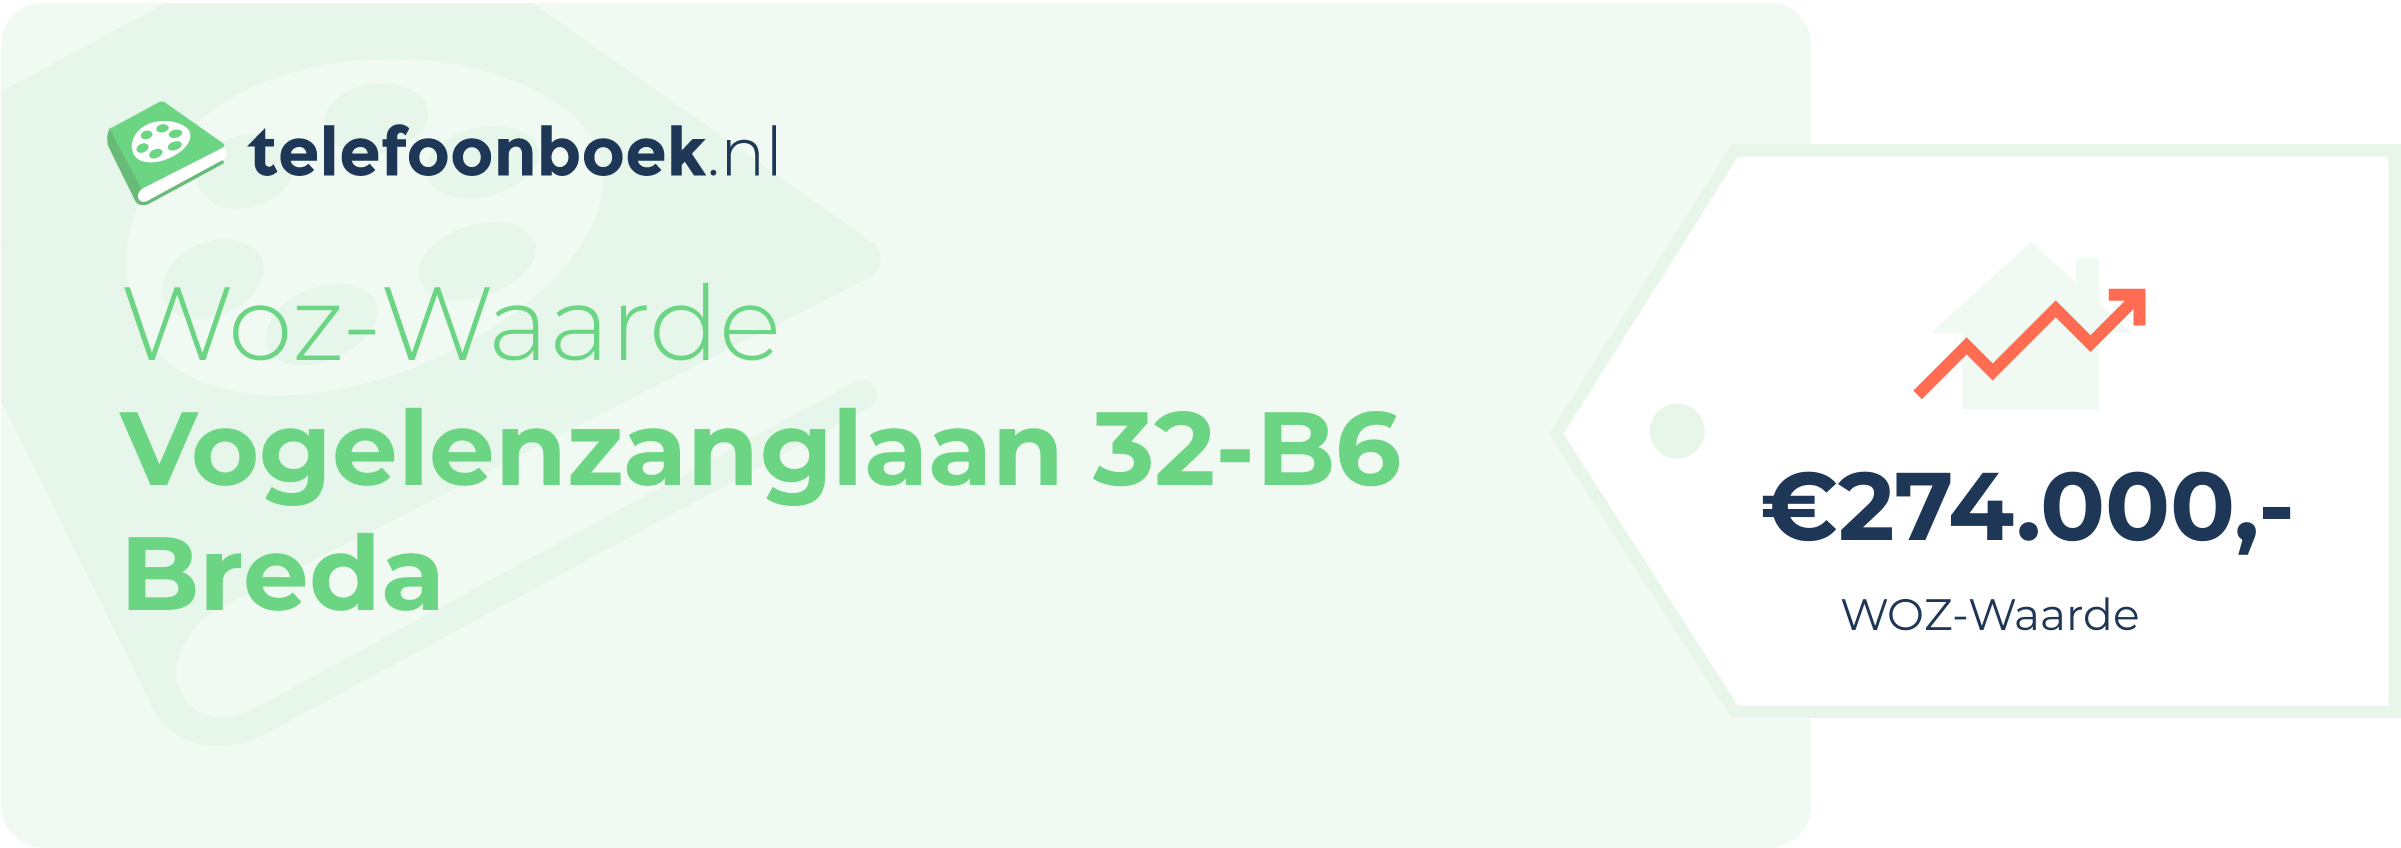 WOZ-waarde Vogelenzanglaan 32-B6 Breda